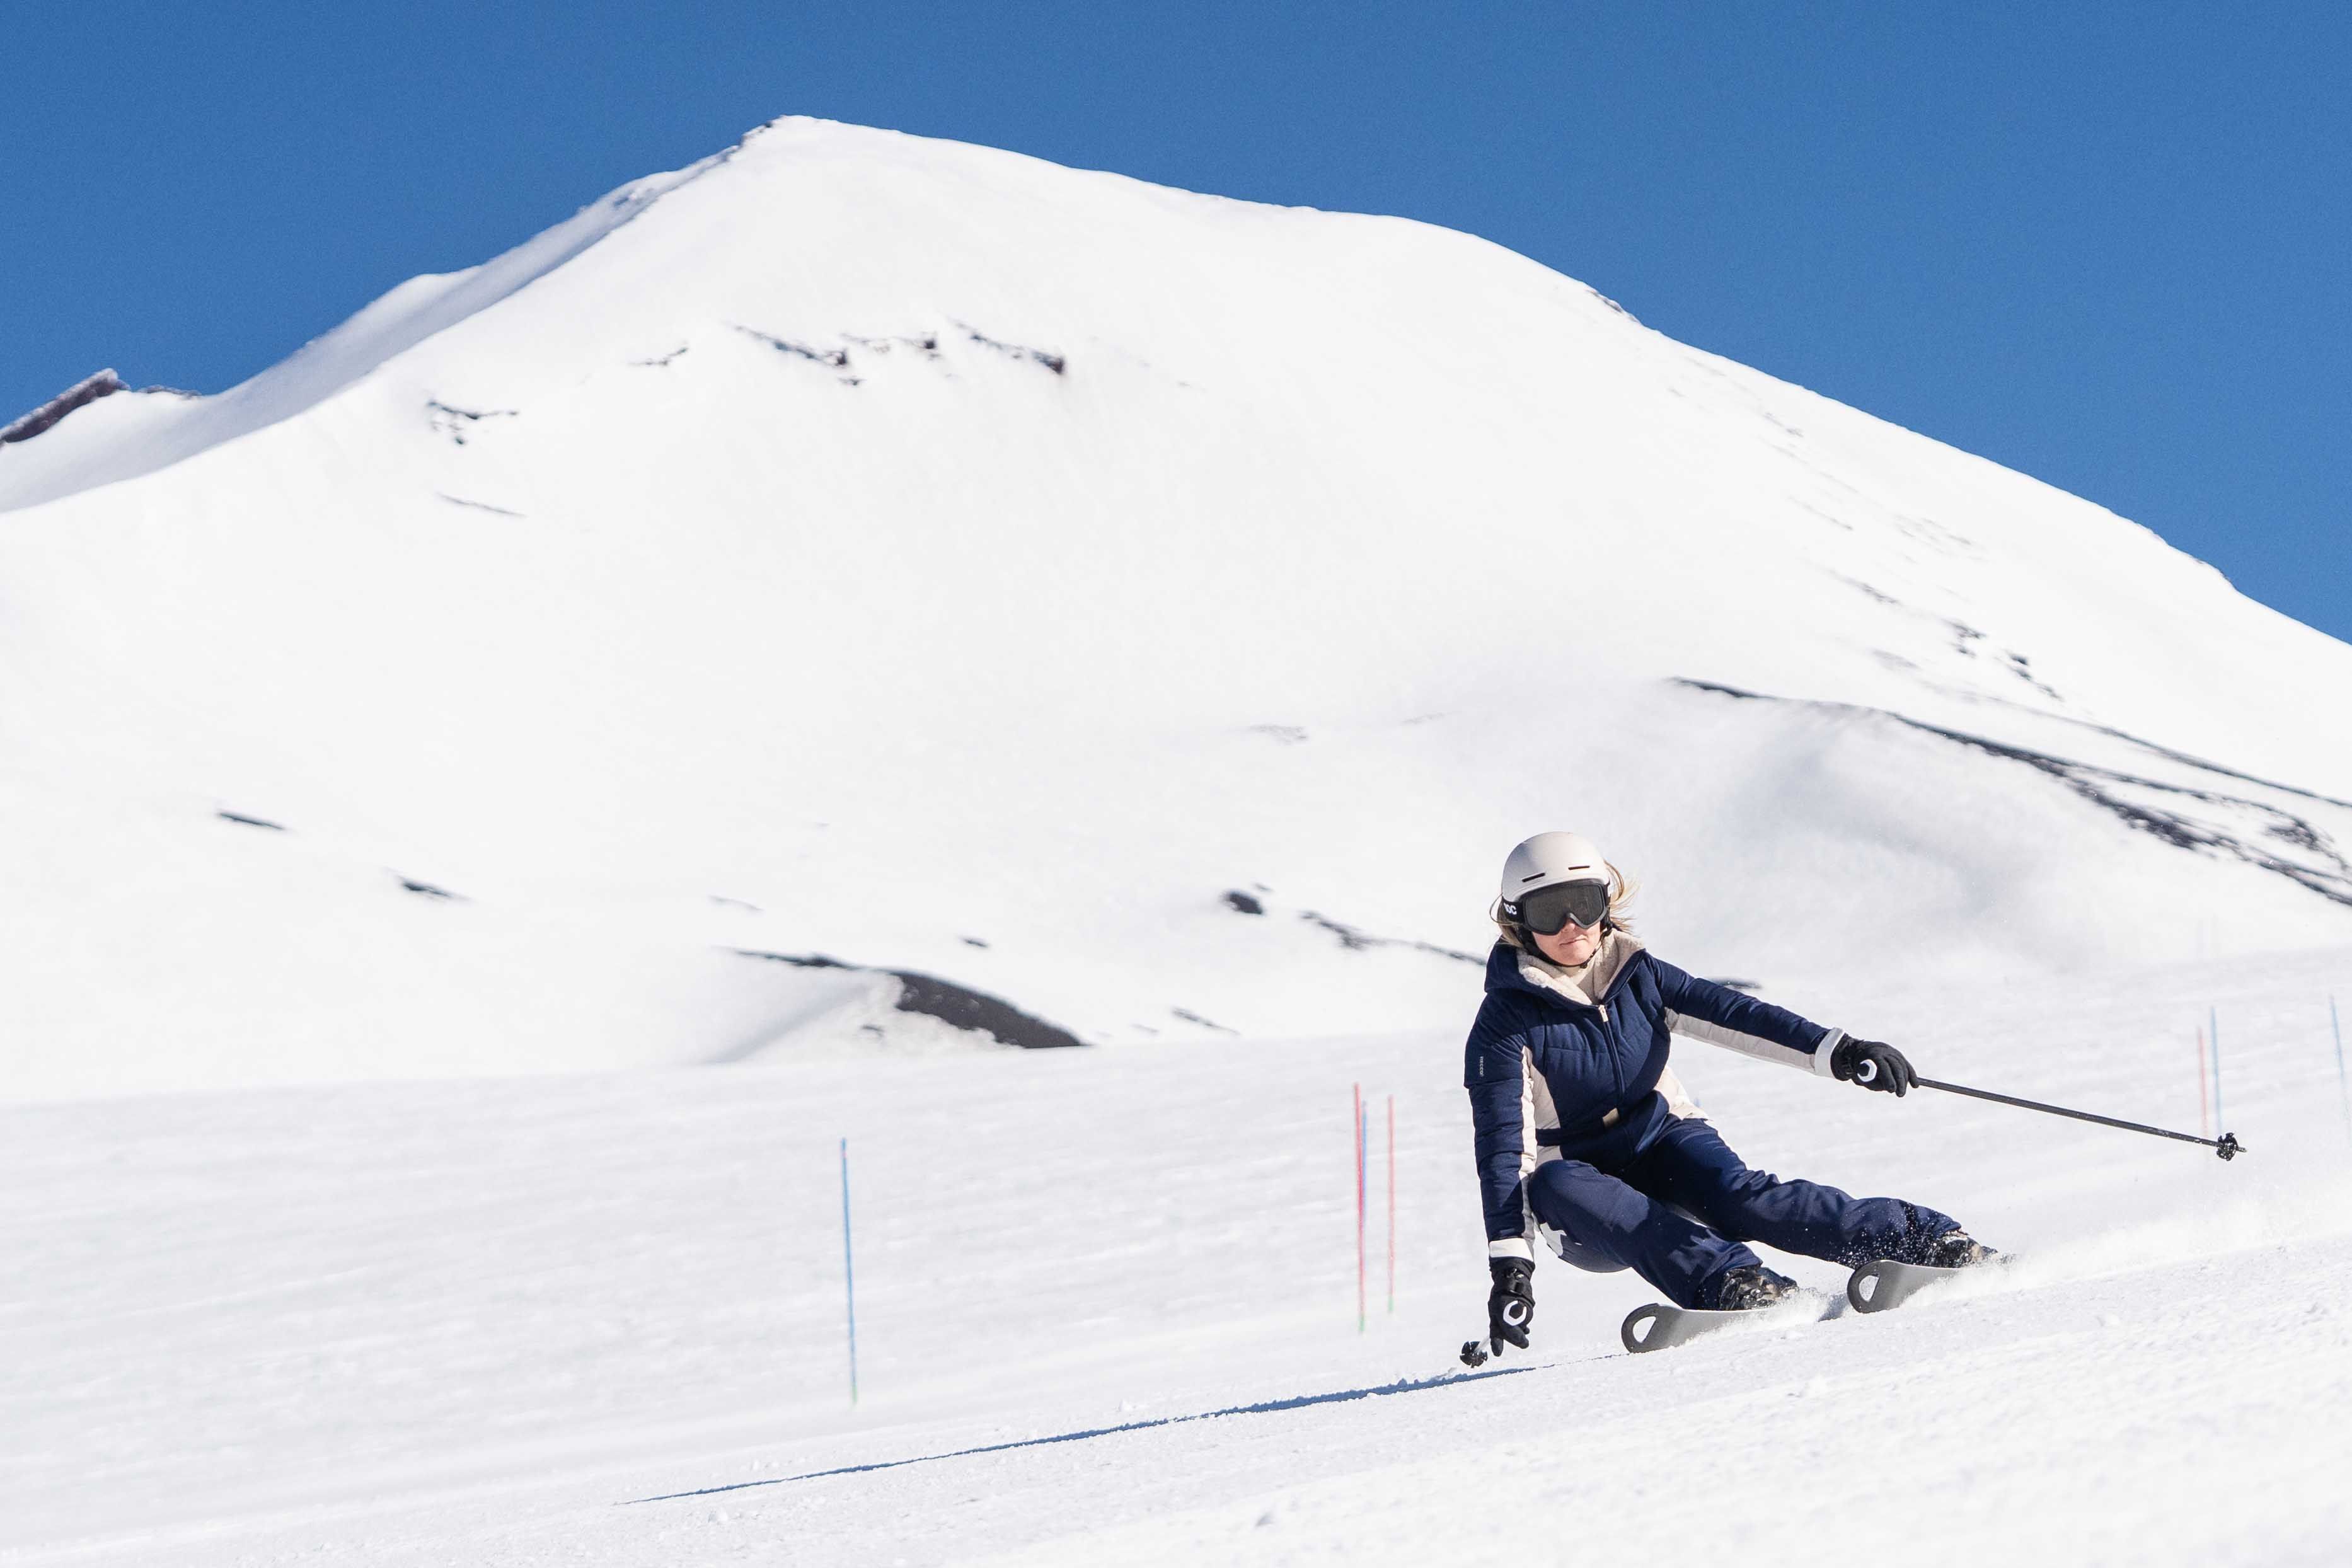 Sube a la nieve con la nueva colección de esquí de Oysho